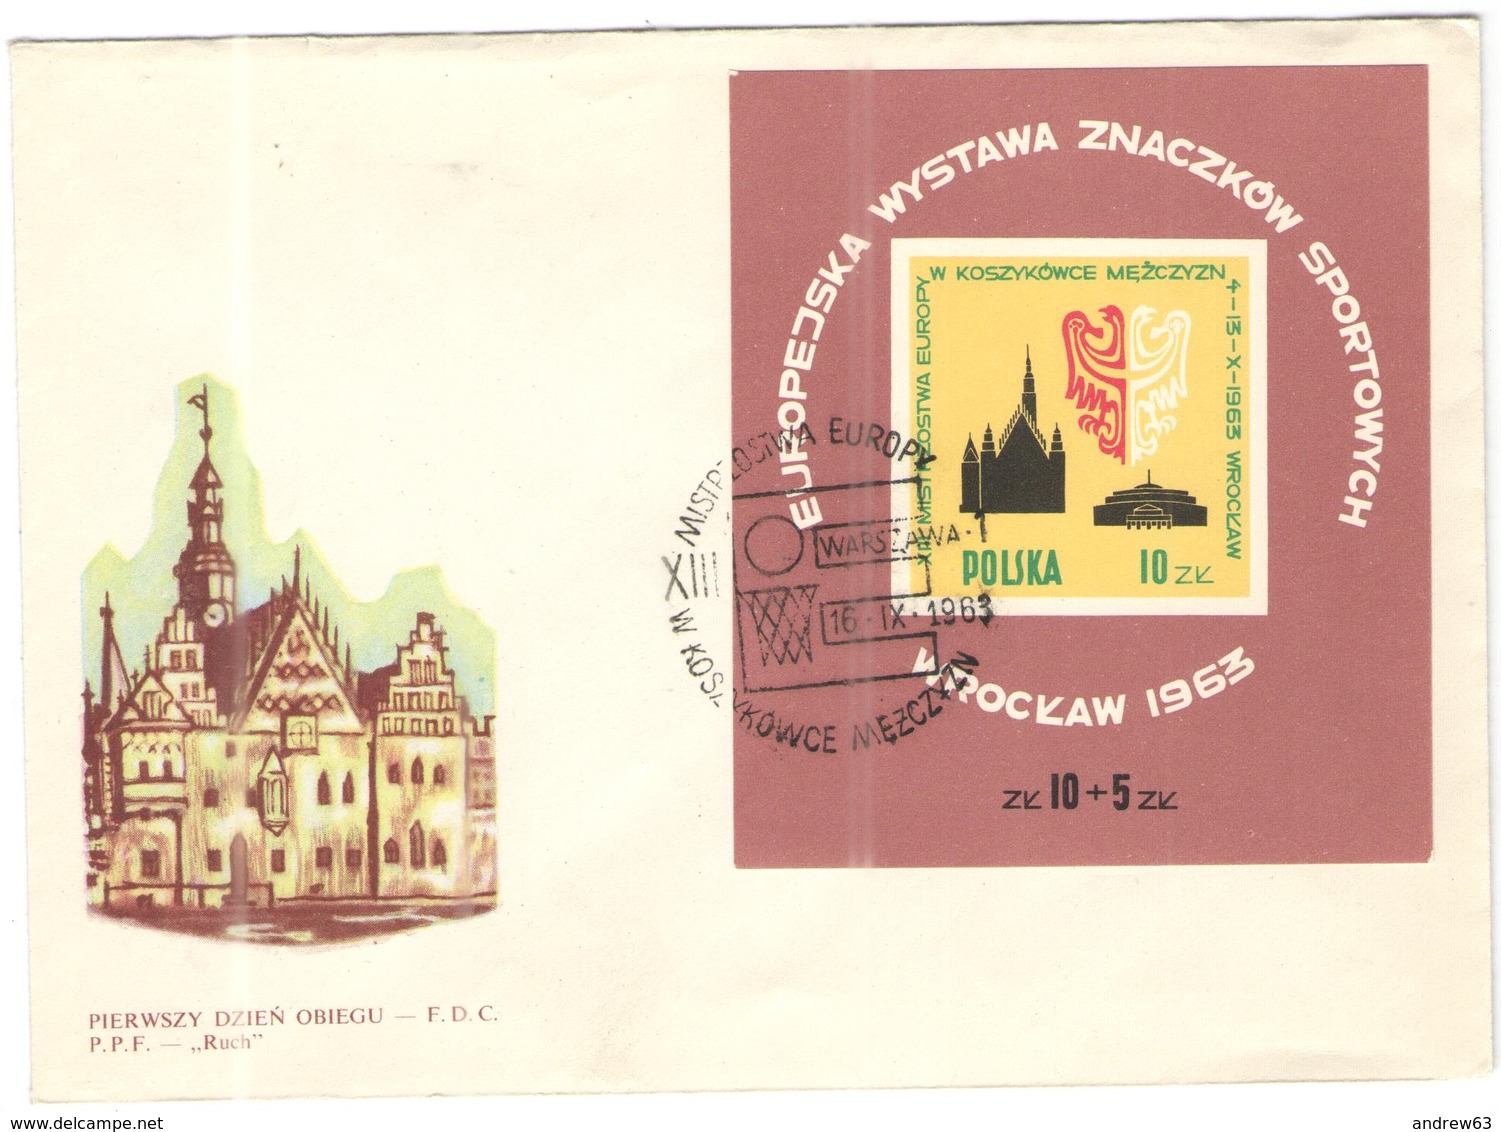 POLONIA - POLSKA - POLAND - 1963 - EUROPEJSKA WYSTAWA ZNACZKOW SPORTOWYCH - FDC - BASKETBALL - FDC